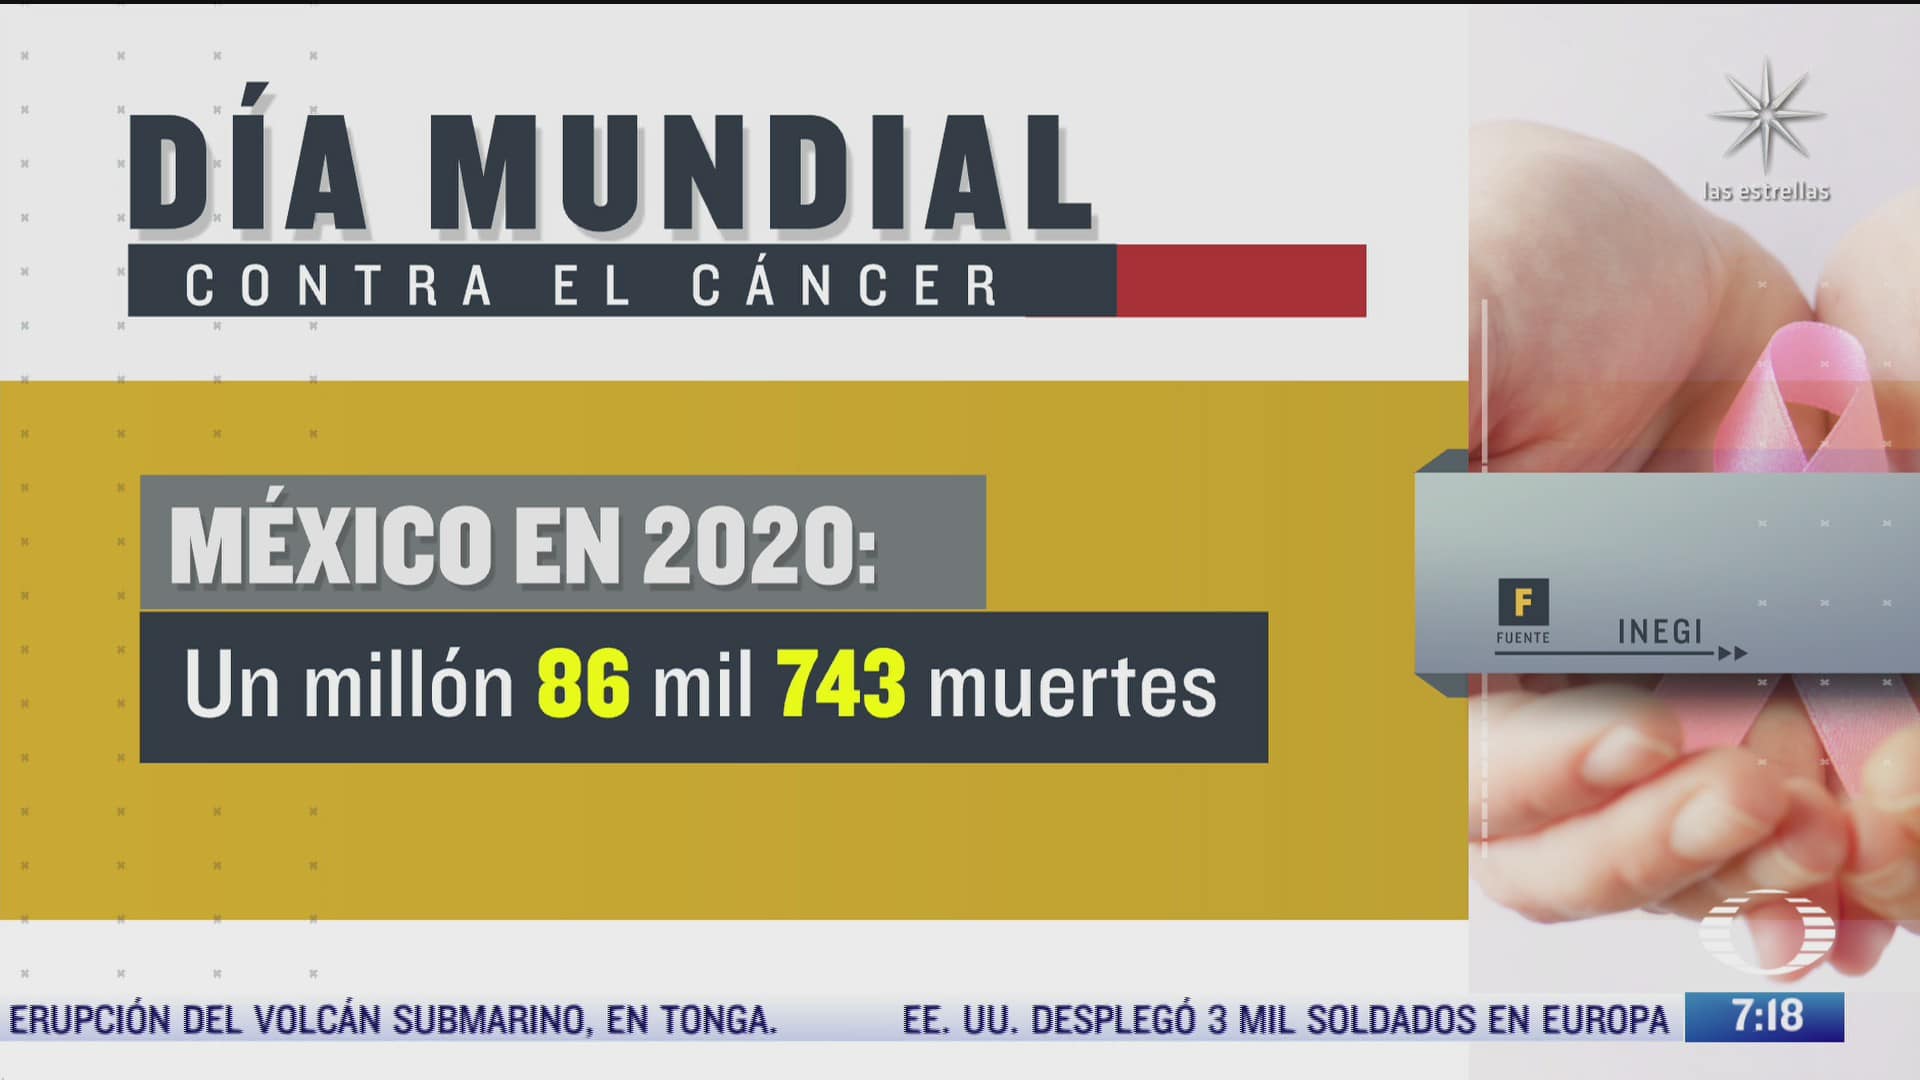 en 2020 se registraron mas de 90 mil muertes por cancer en mexico